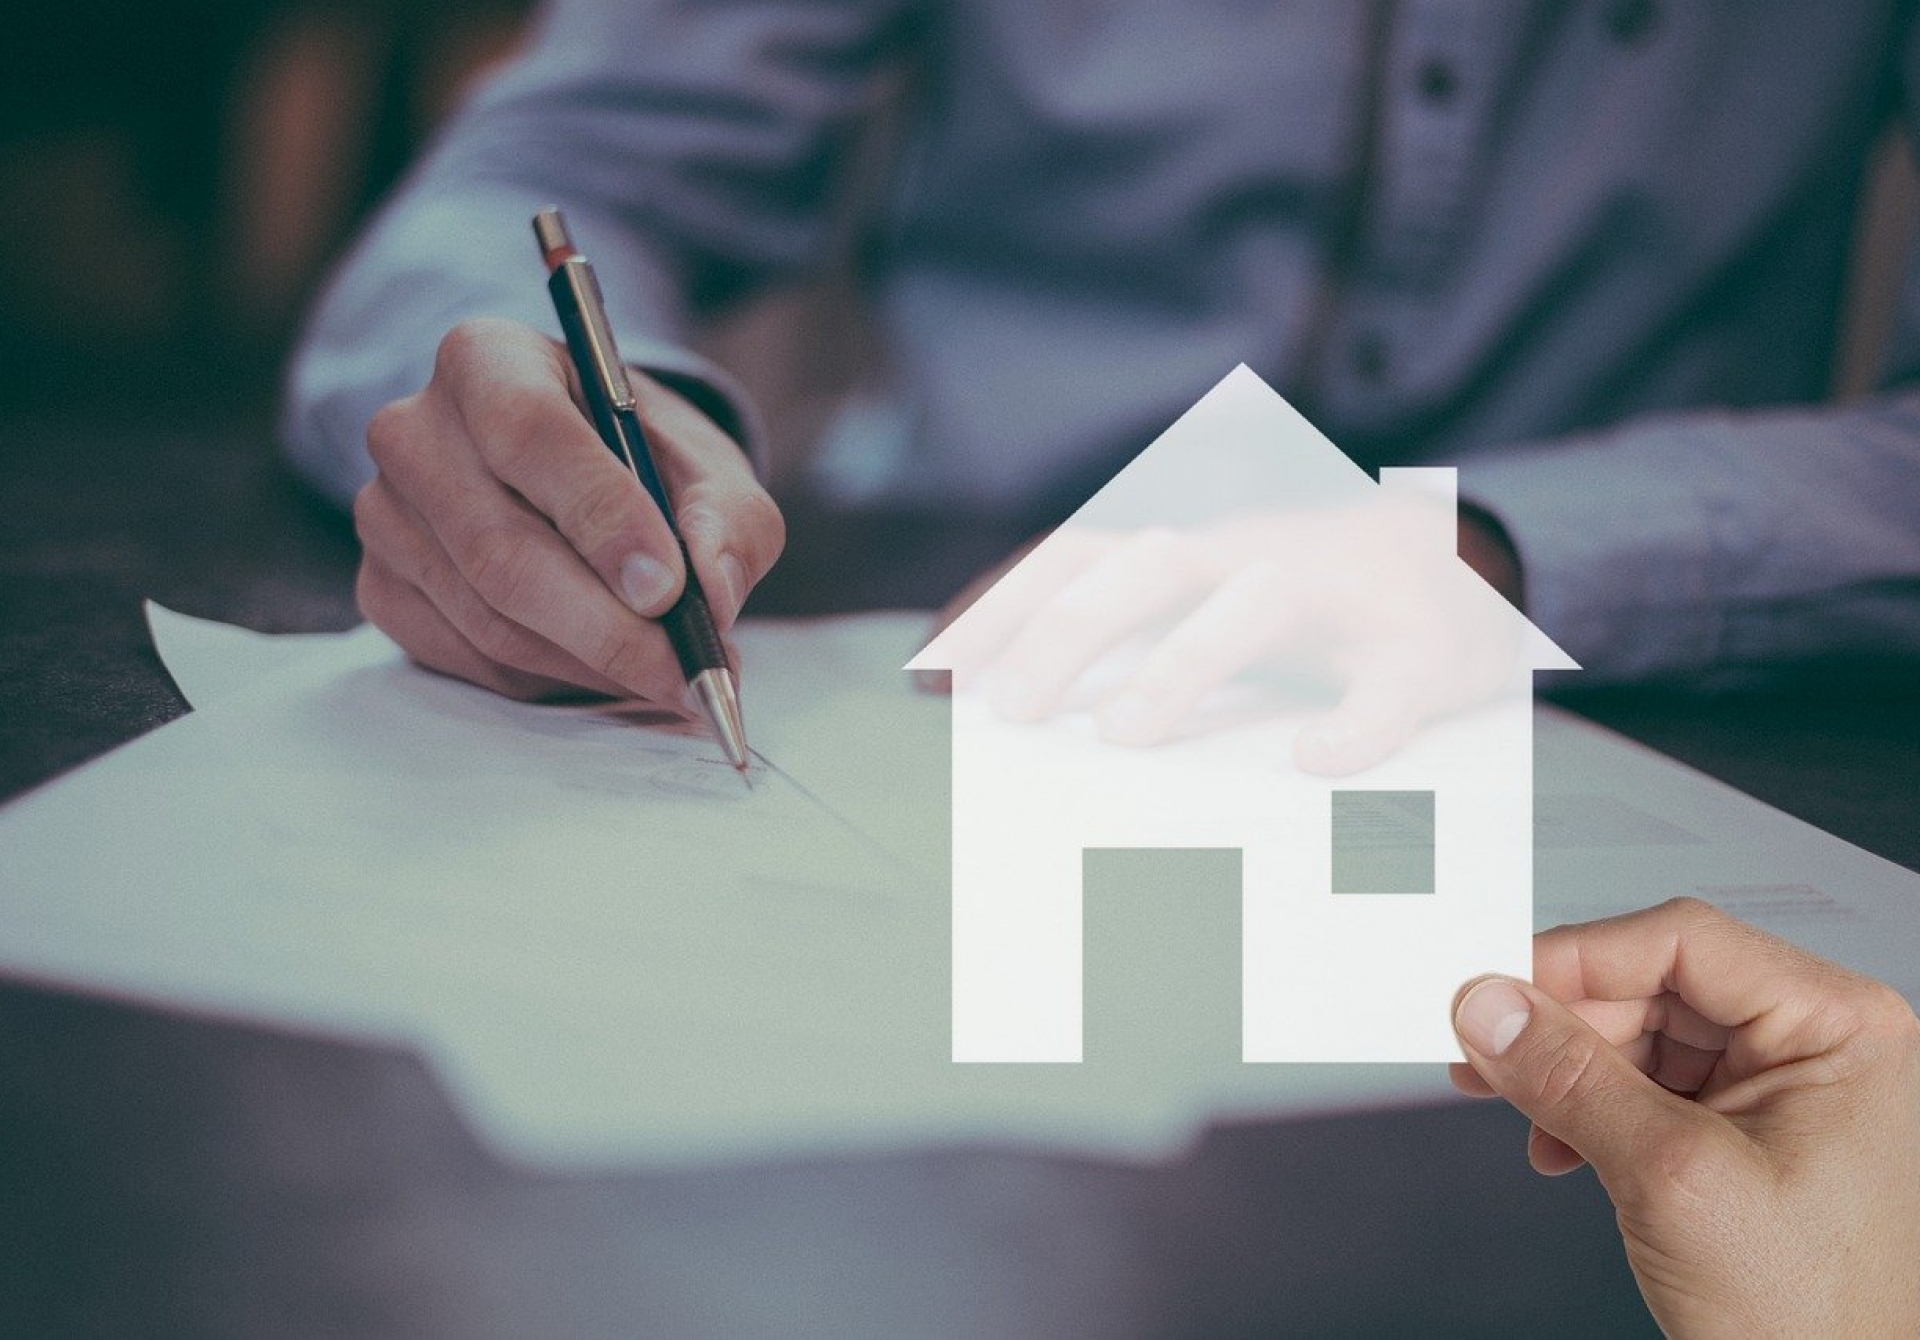  Achat immobilier : pouvez-vous changer d’assurance emprunteur ?